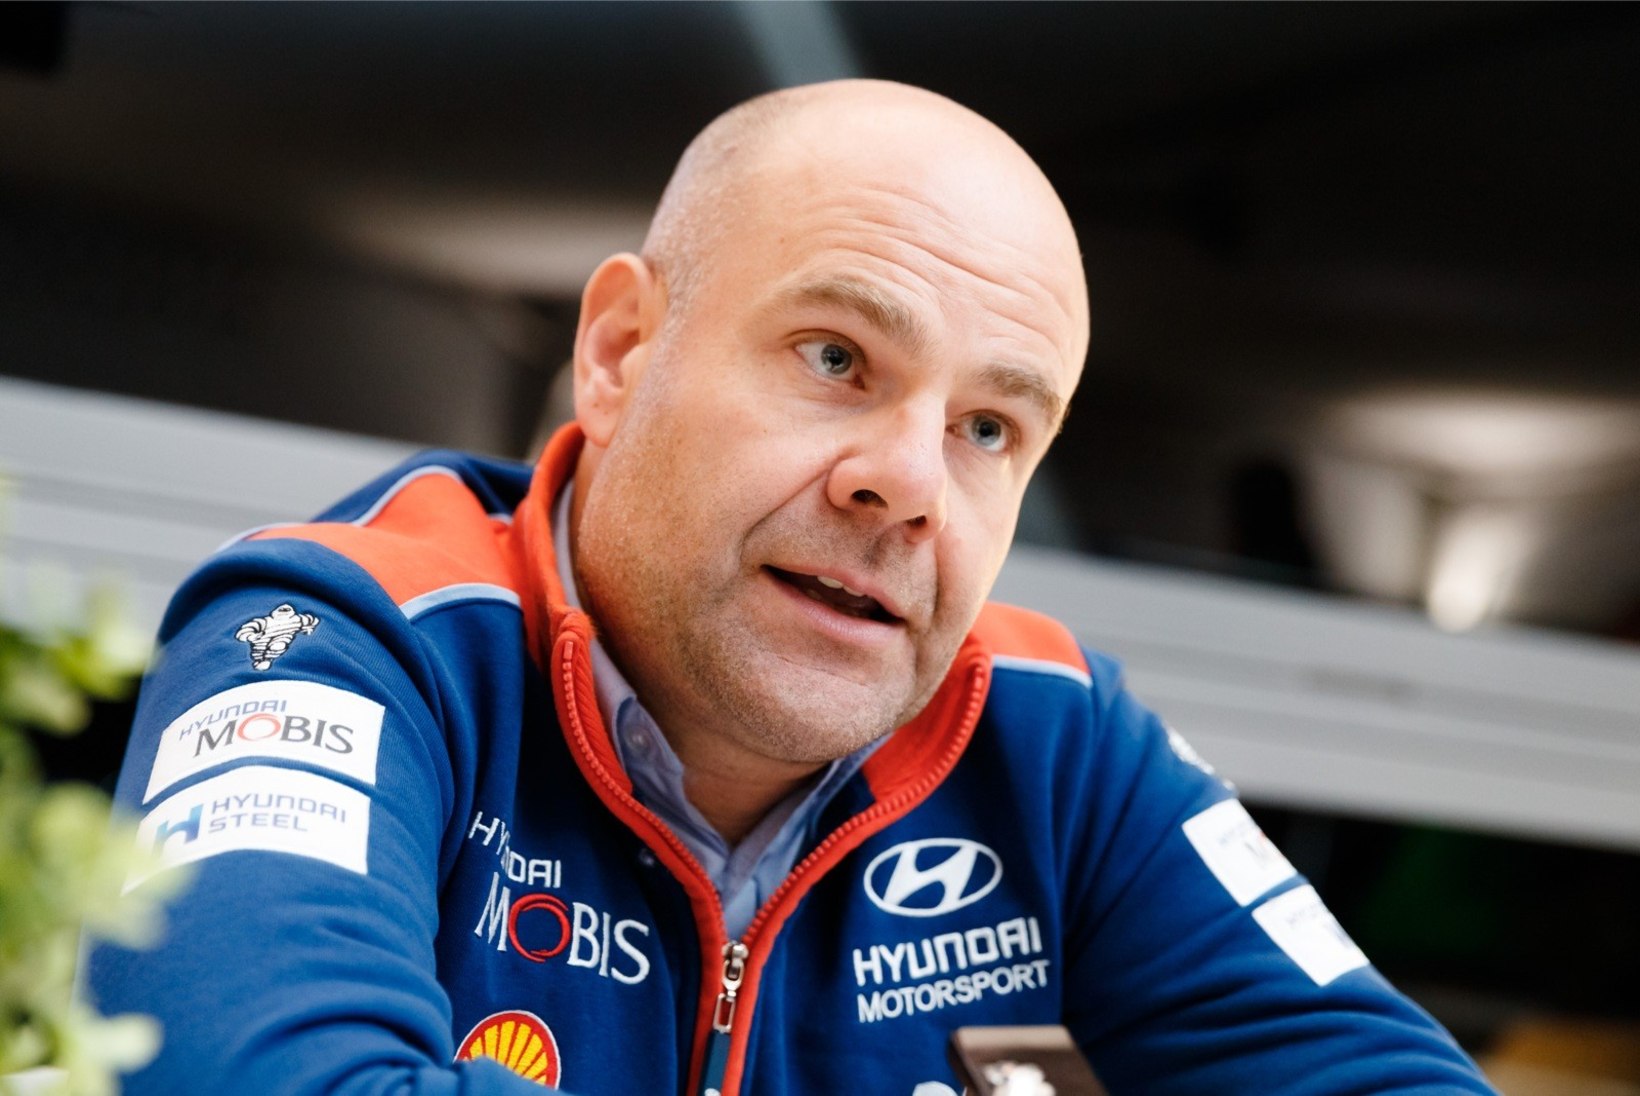 Mõtteharjutus WRC tiimijuhtidele: kui saaksite teisest tiimist ühe sõitja napsata, siis kelle?